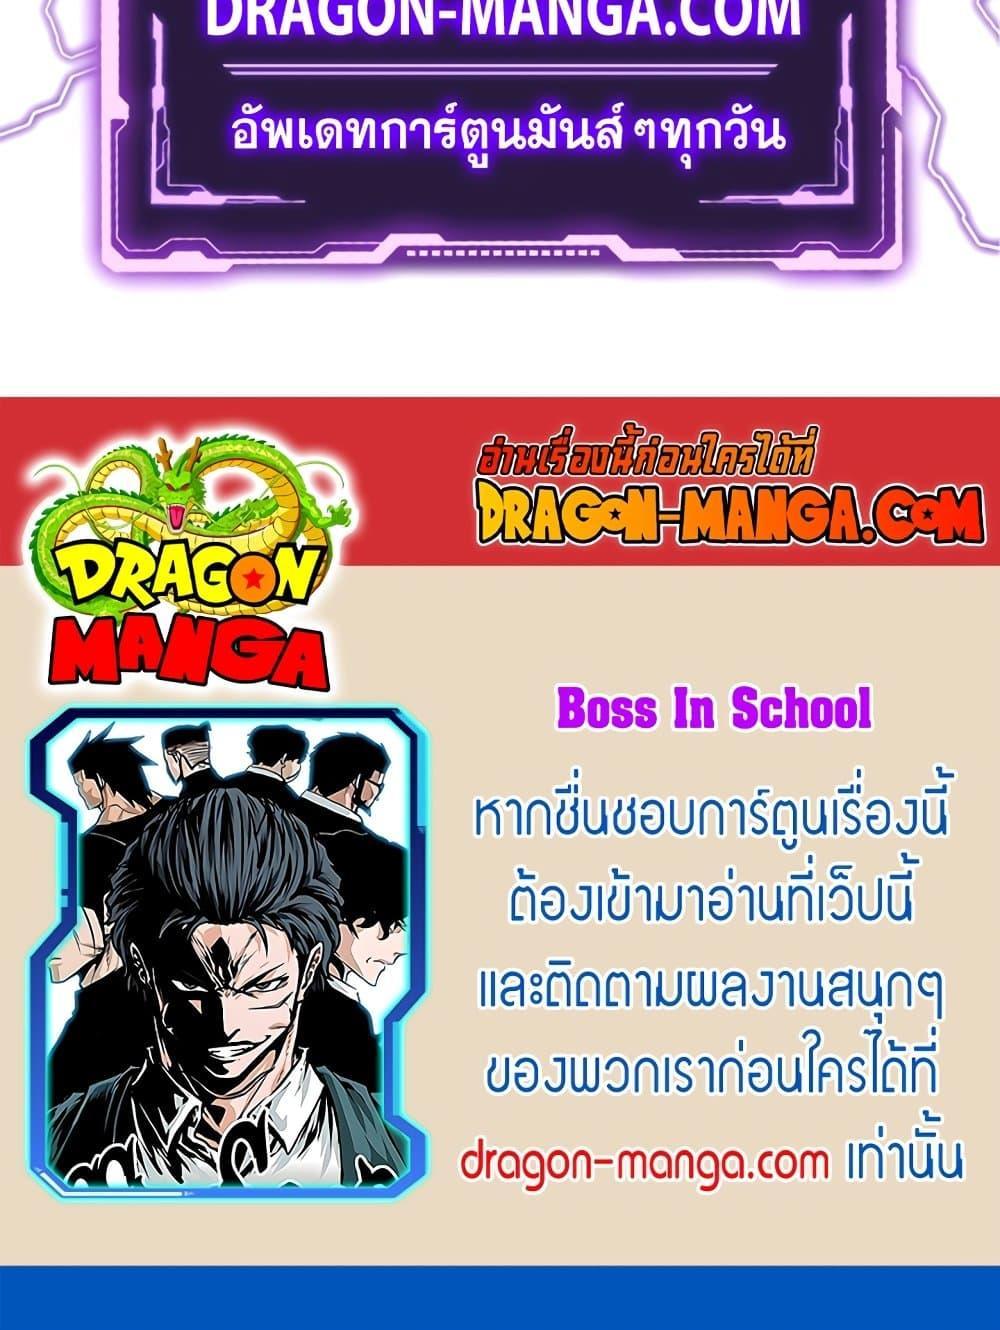 Boss in School 81 29